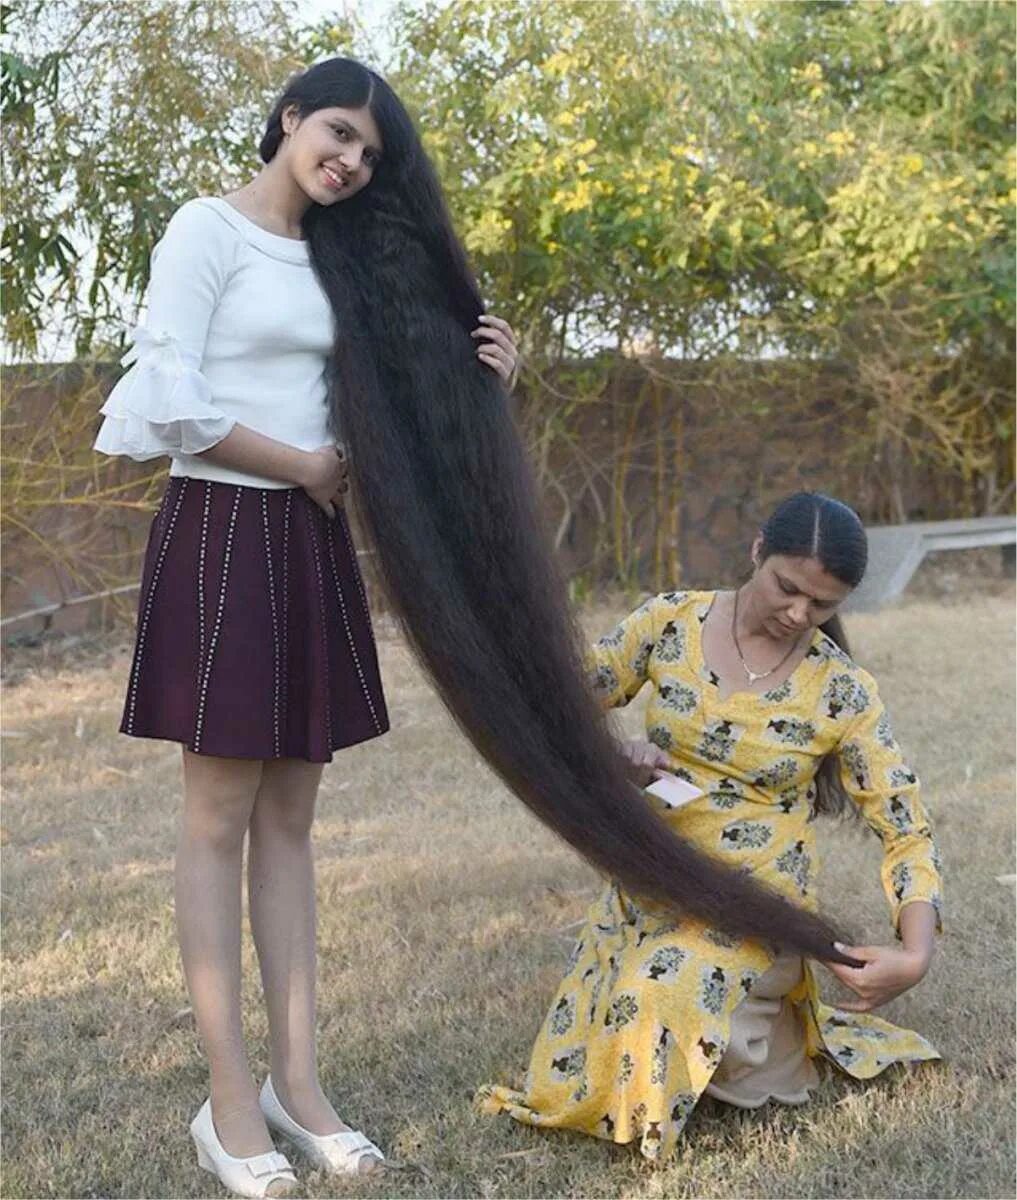 Ниланши Патель. Длинные волосы рекорд Гиннесса. Рекорд Гиннесса самые длинные волосы. Книга рекордов Гиннесса самые длинные волосы.